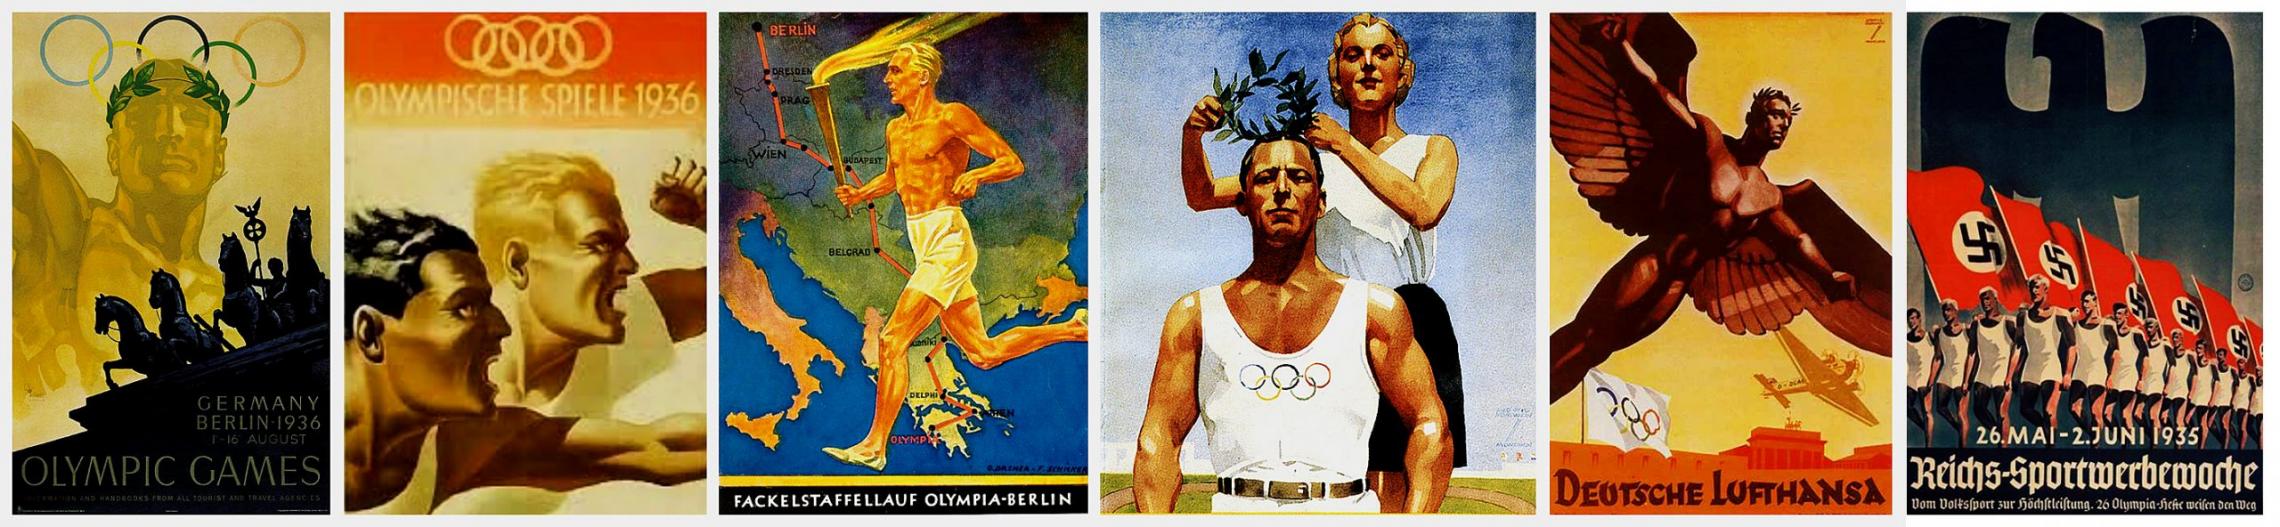 Постеры Олимпийских игр в Берлине 1936 года